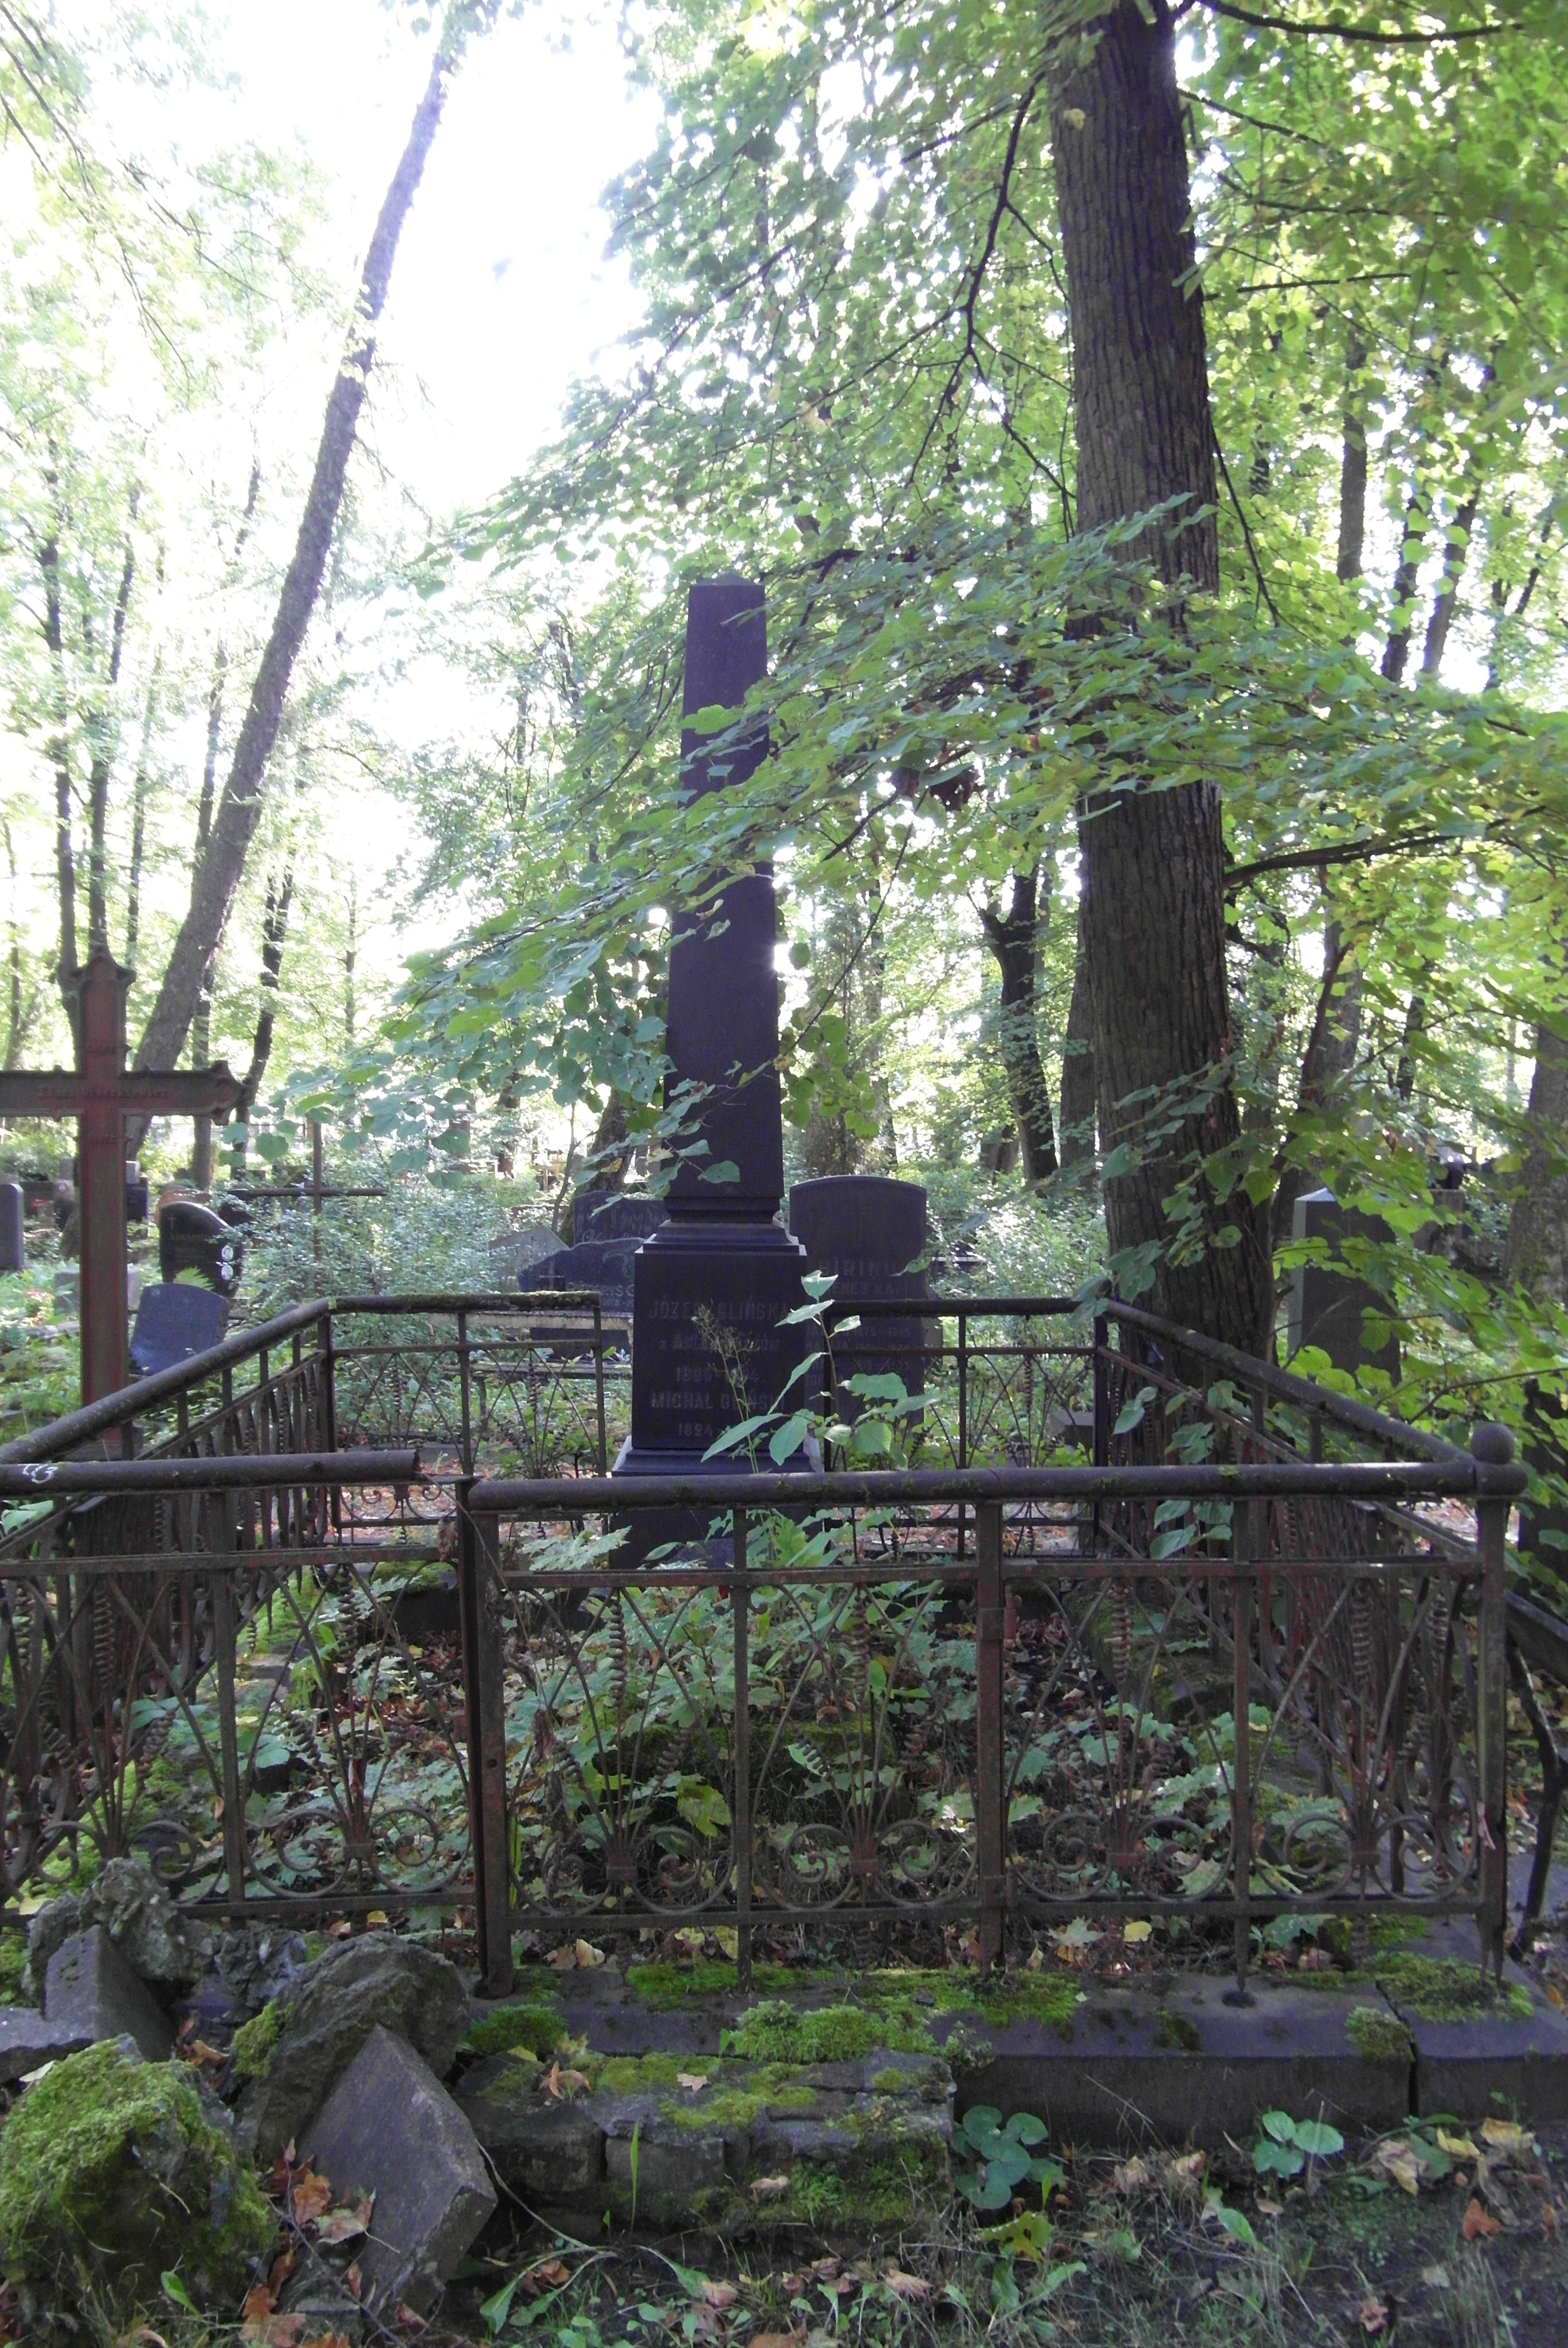 Tombstone of Józefa Glińska, Michal Gliński, St Michael's cemetery in Riga, as of 2021.